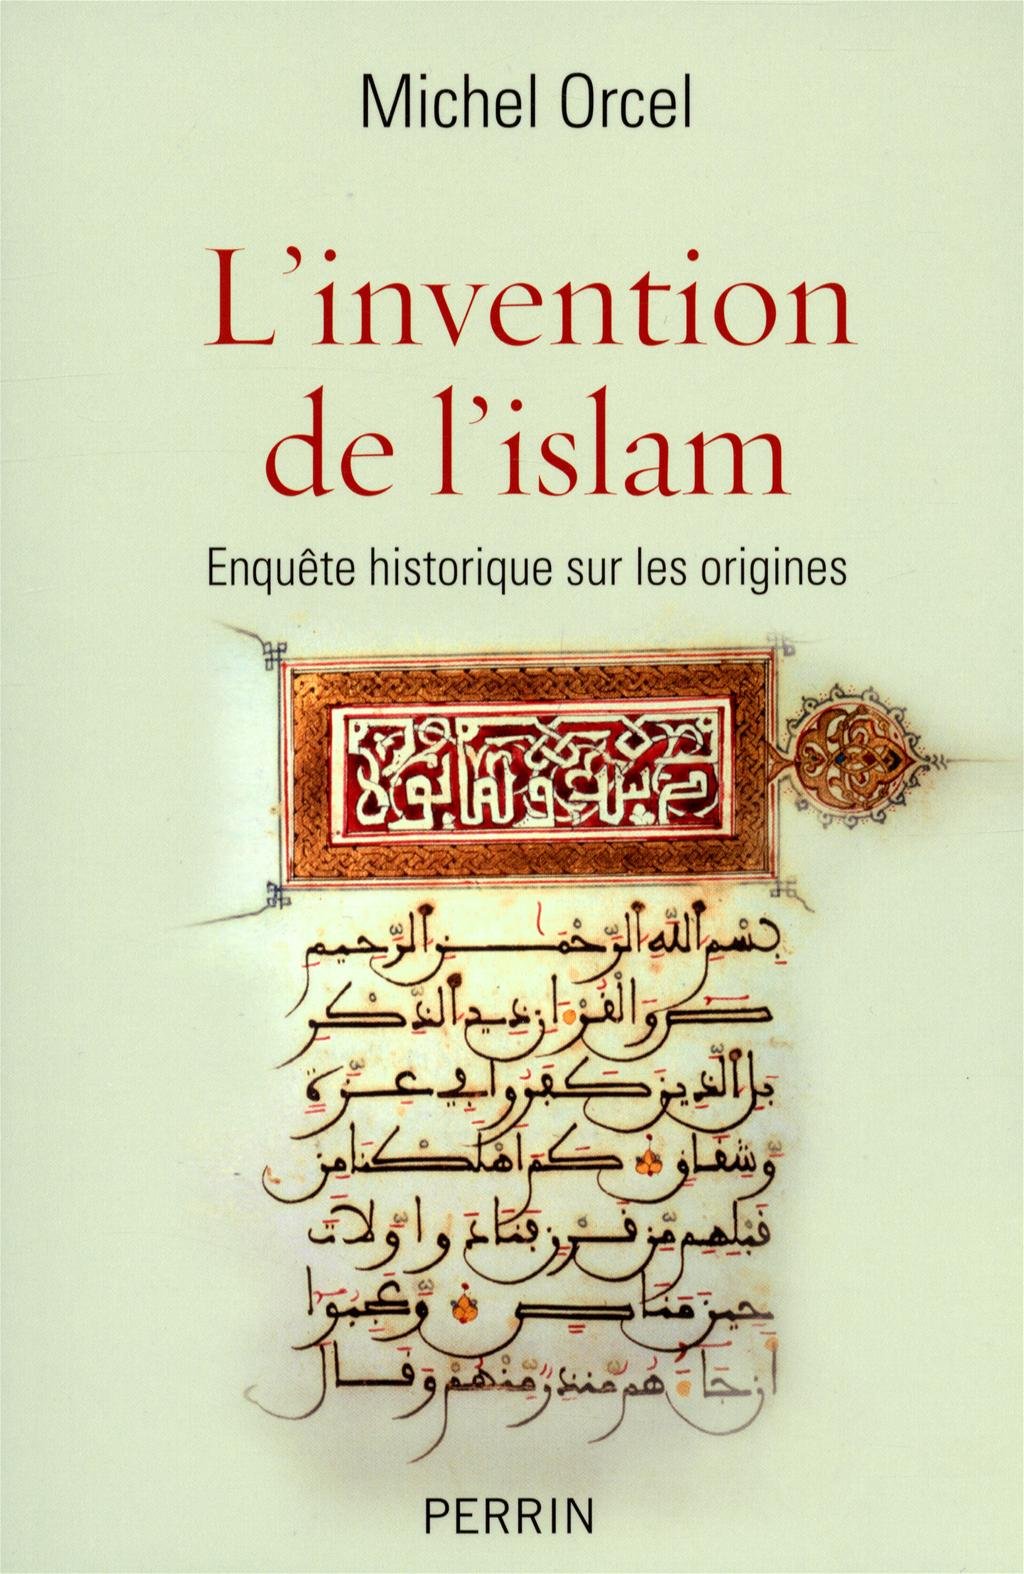 Michel Orcel: L’invention de l’islam.